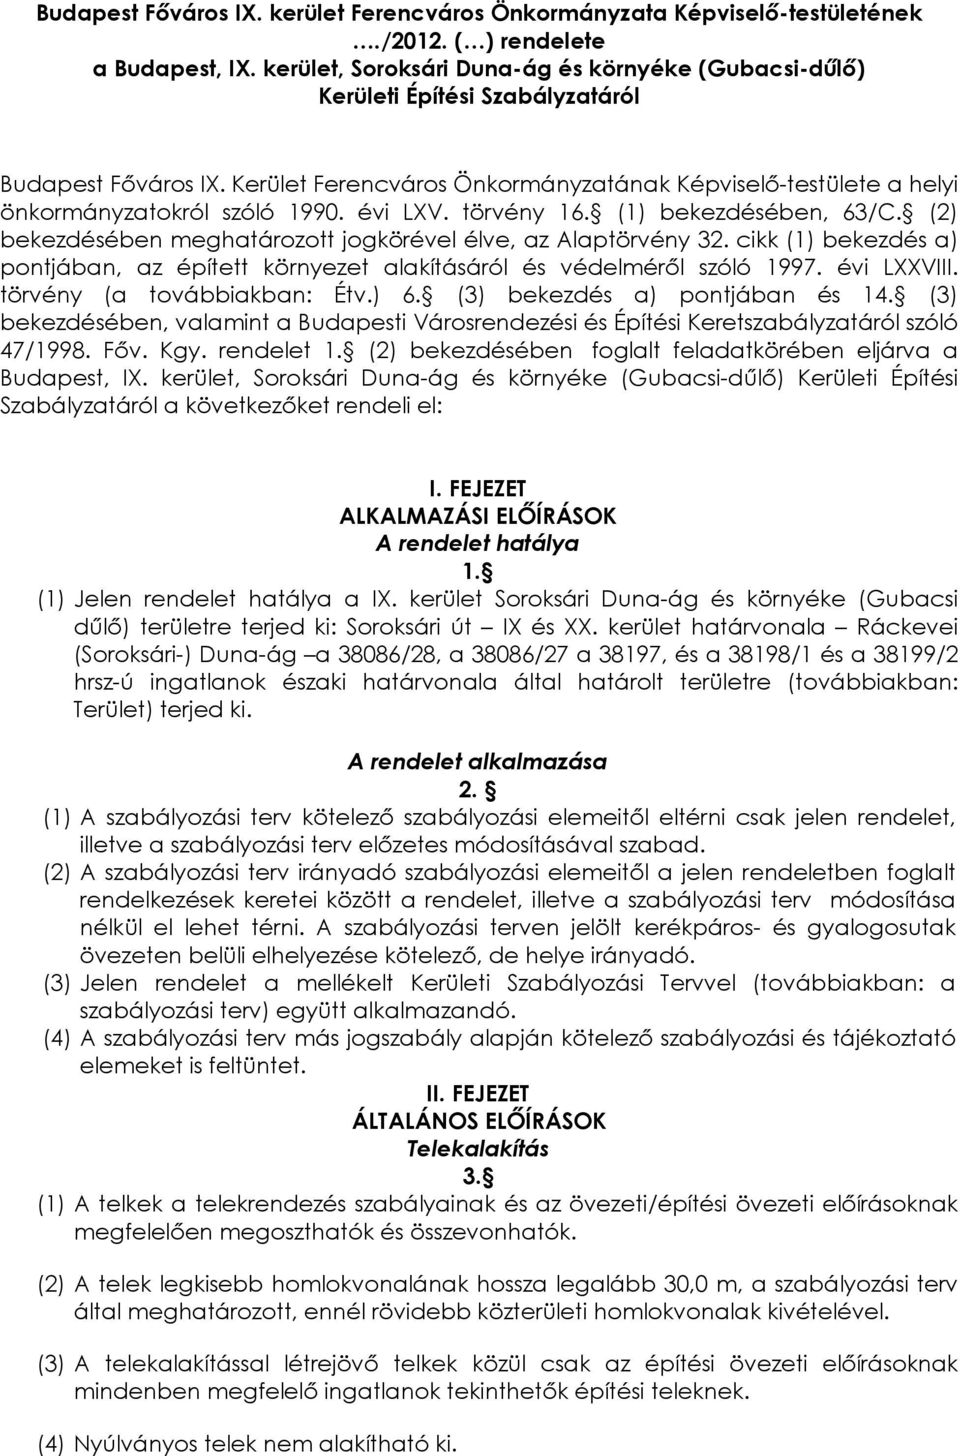 Kerület Ferencváros Önkormányzatának Képviselő-testülete a helyi önkormányzatokról szóló 1990. évi LXV. törvény 16. (1) bekezdésében, 63/C.